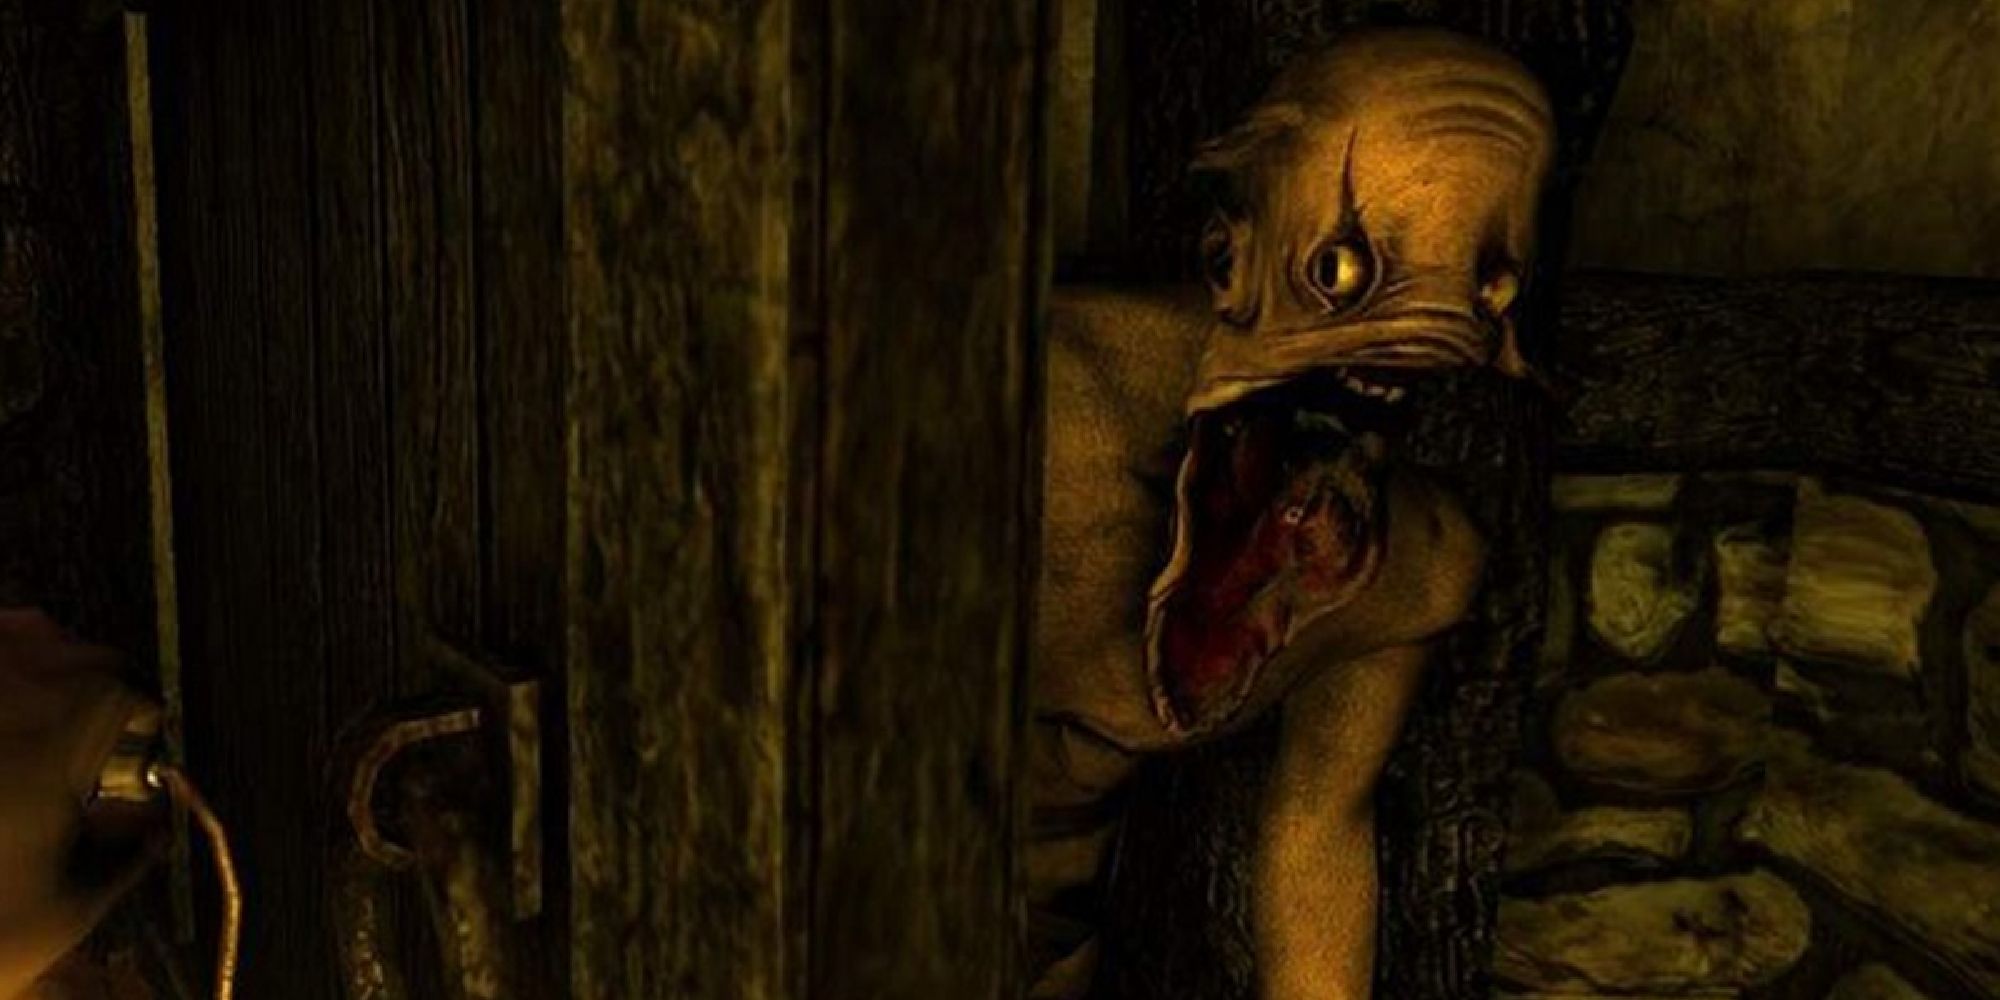 A grunt peering around an open door towards the player.